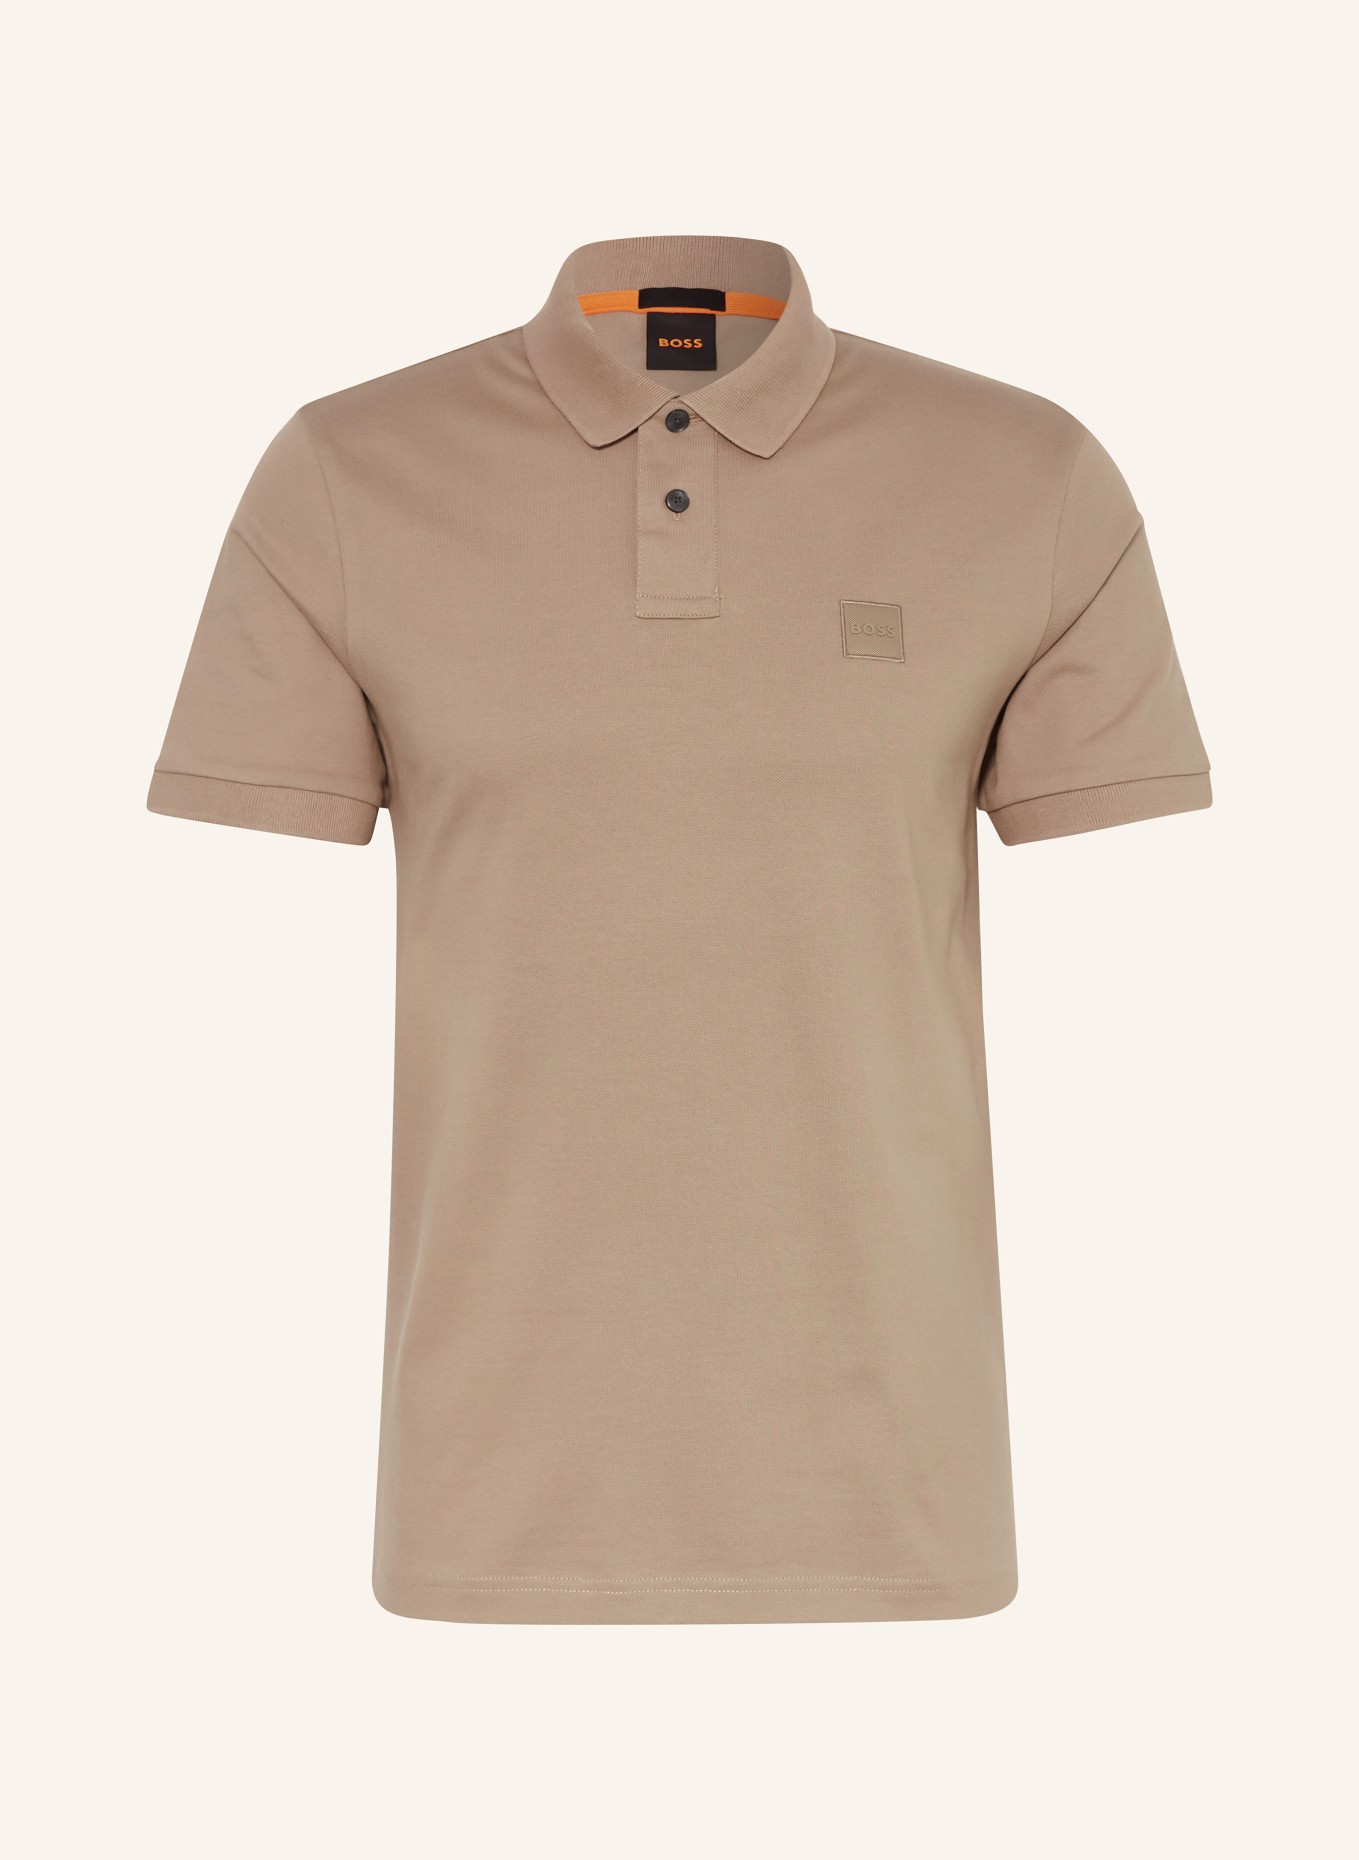 BOSS Piqué-Poloshirt PASSENGER Slim Fit, Farbe: HELLBRAUN (Bild 1)